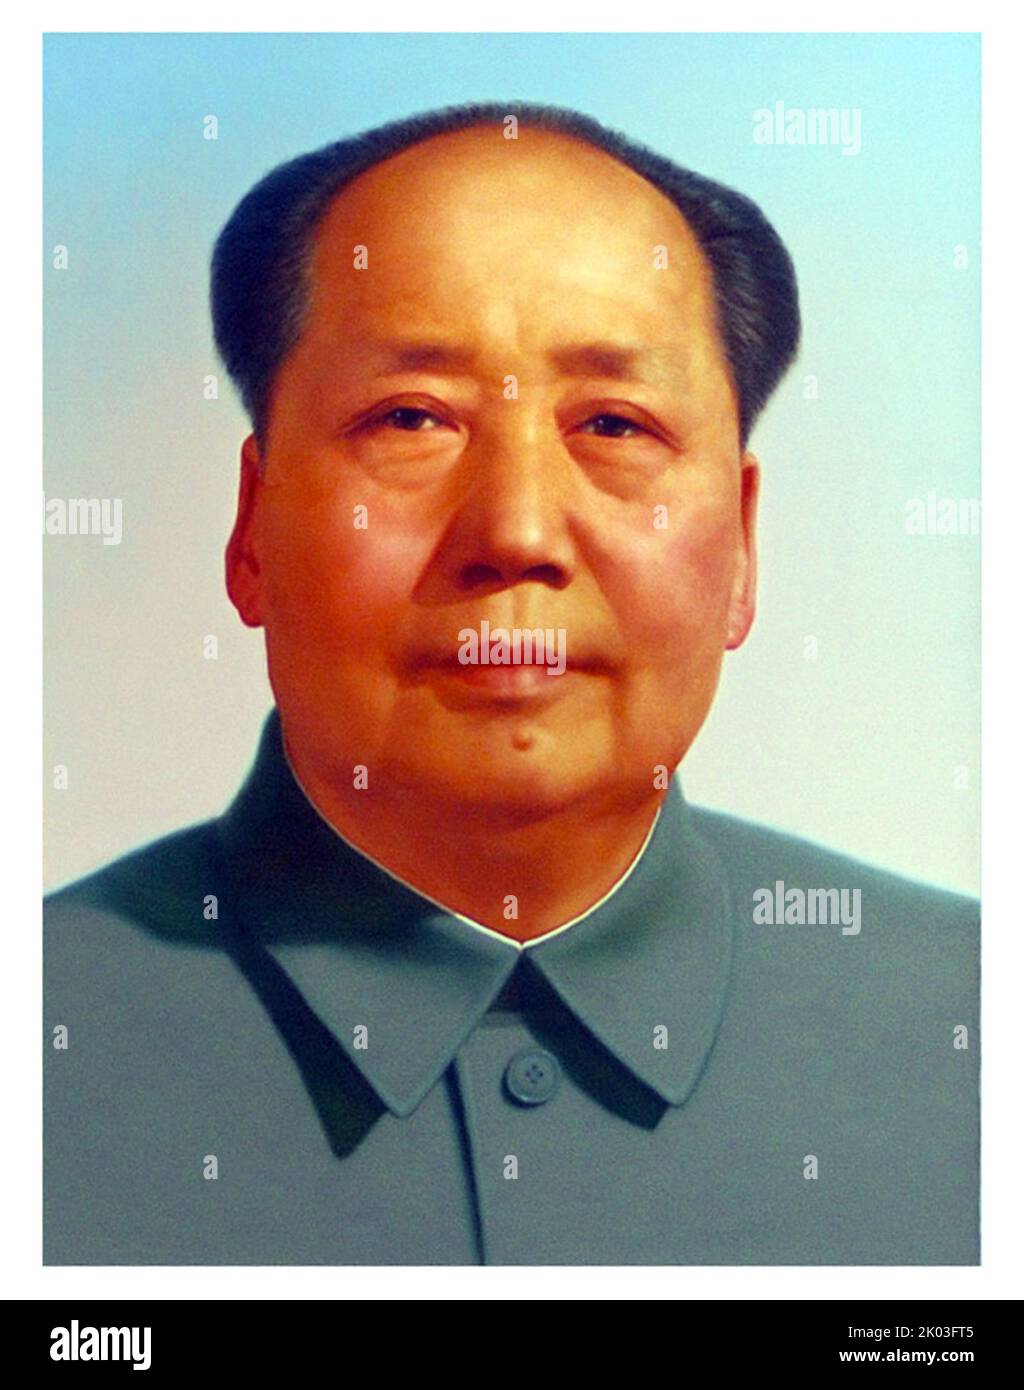 Porträt von Mao Zedong am Tor des Himmlischen Friedens, Peking, China. Mao war Führer der Kommunistischen Partei Chinas. Stockfoto